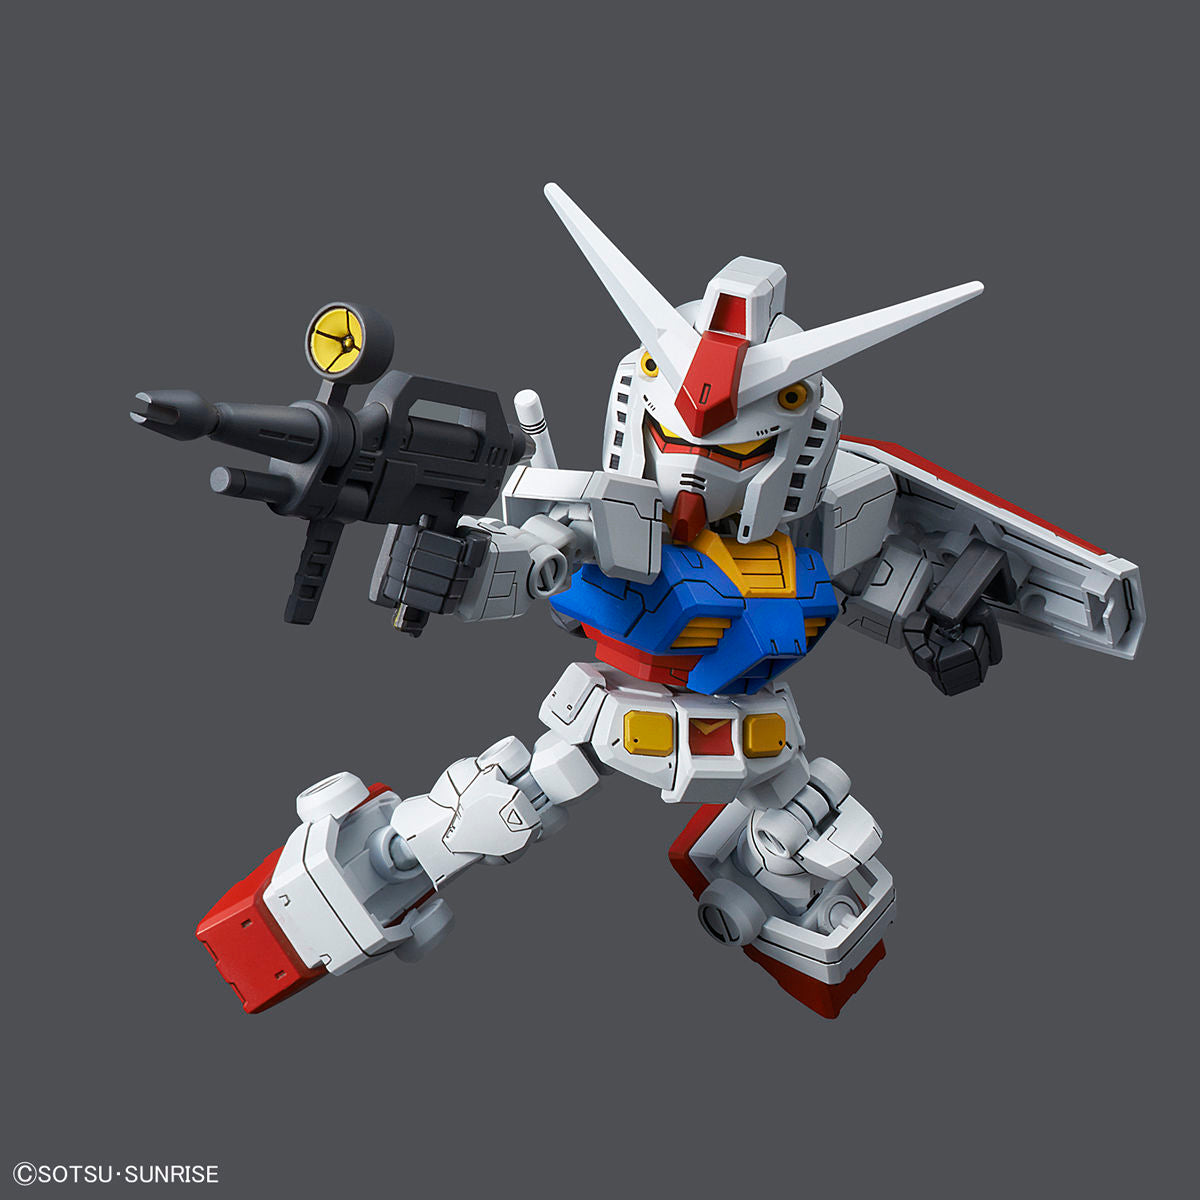 SDCS #01-SP RX-78-2 Gundam & Cross Silhouette Frame Set